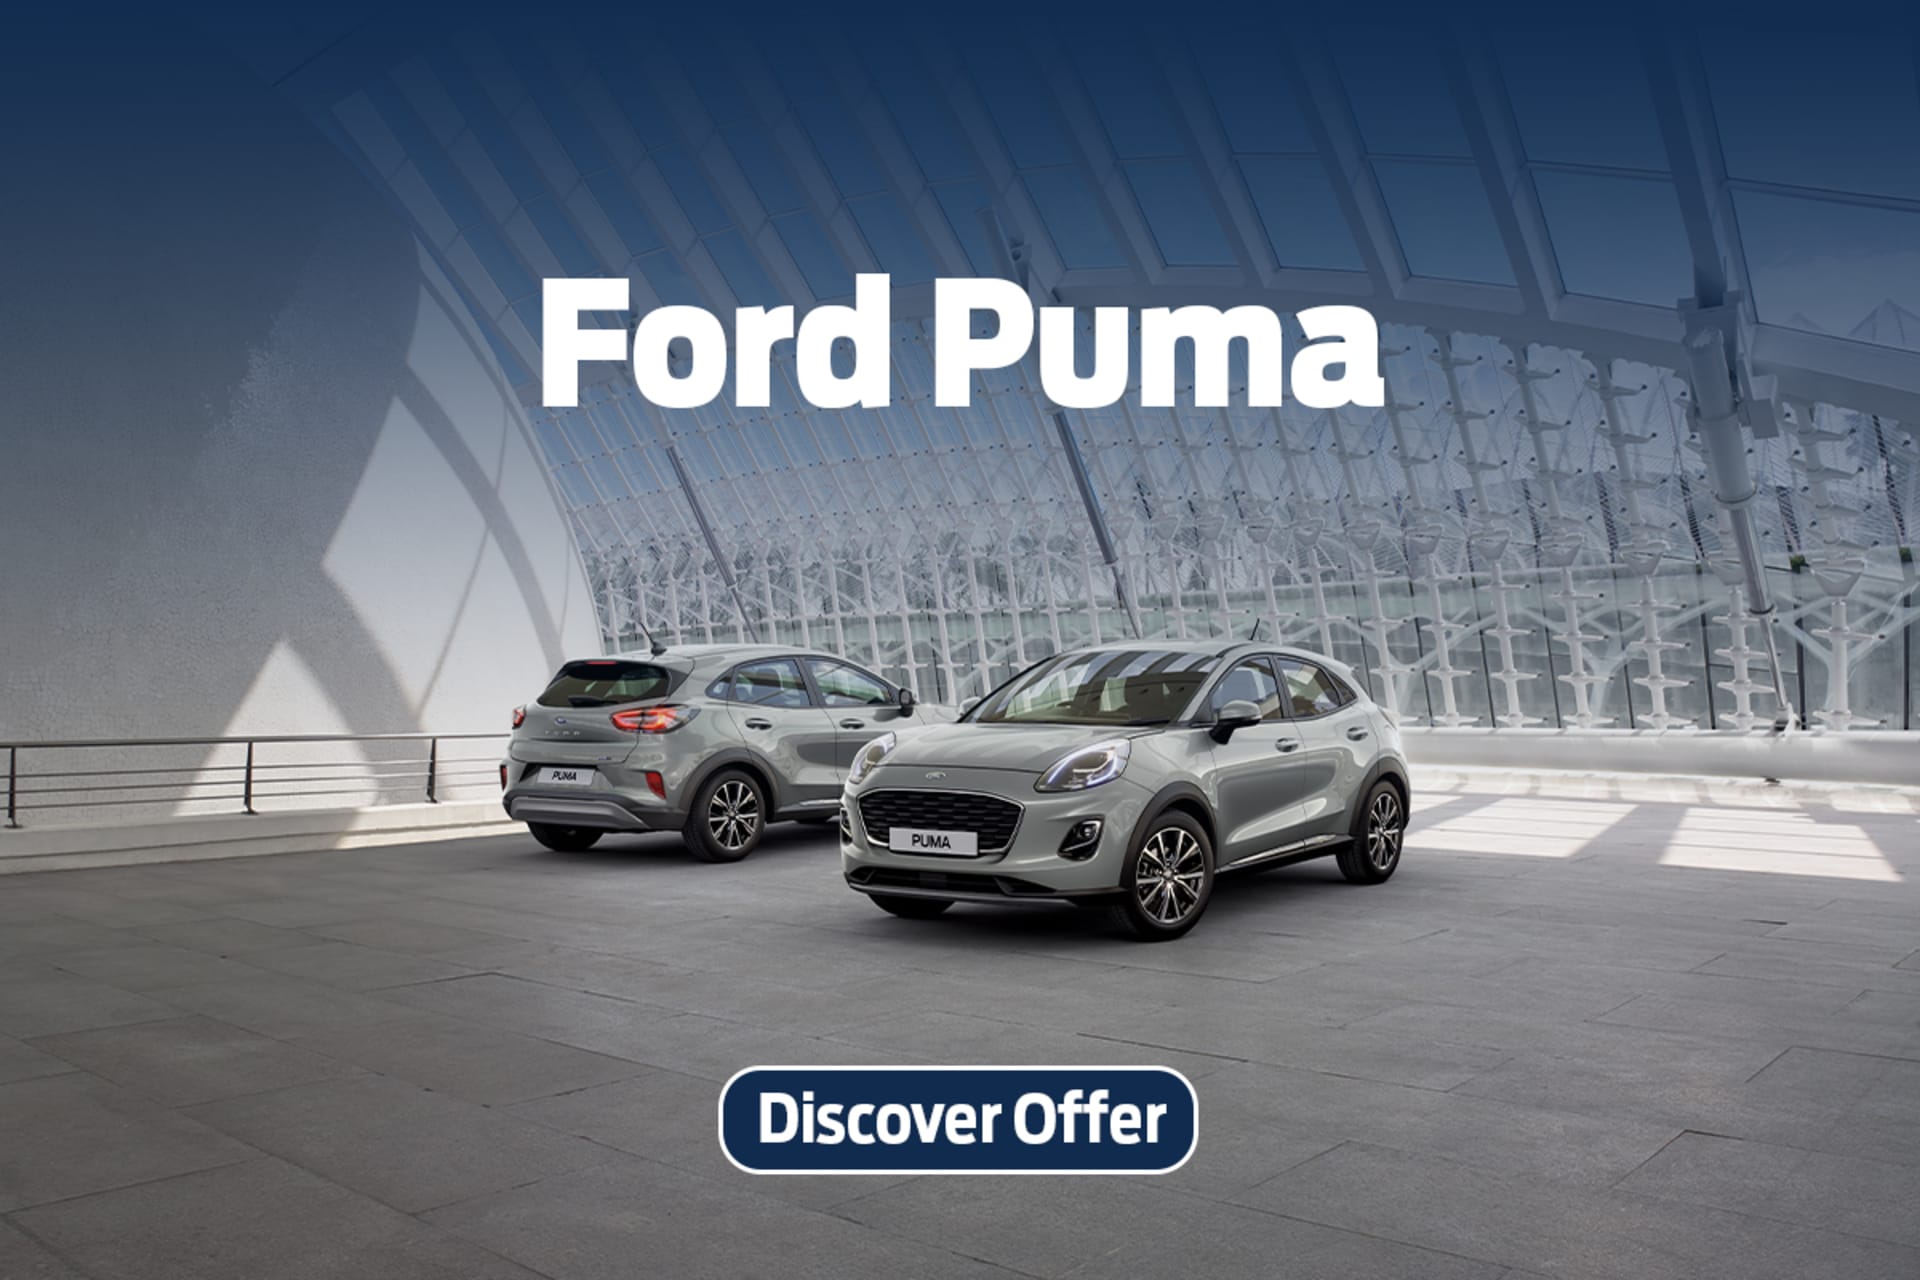 Ford Puma Offer